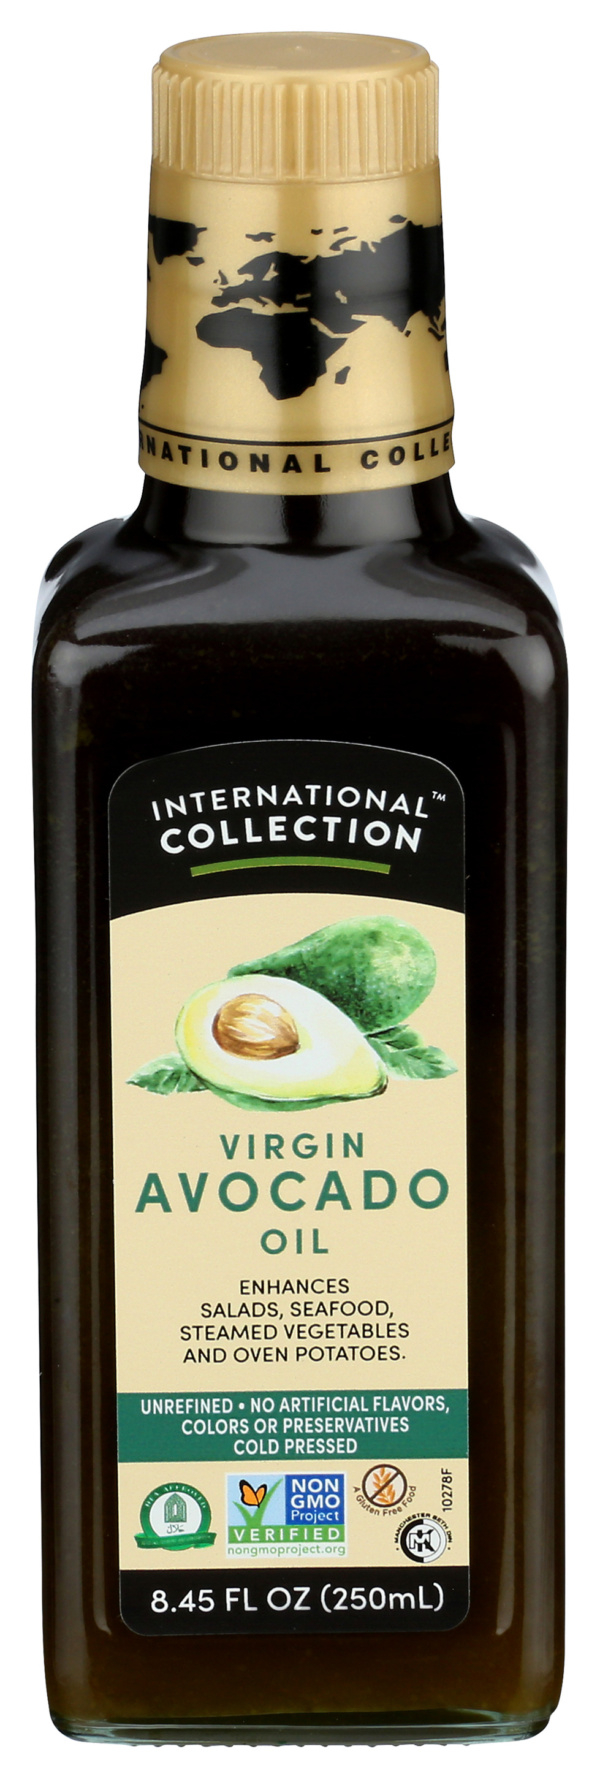 Virgin Avocado Oil